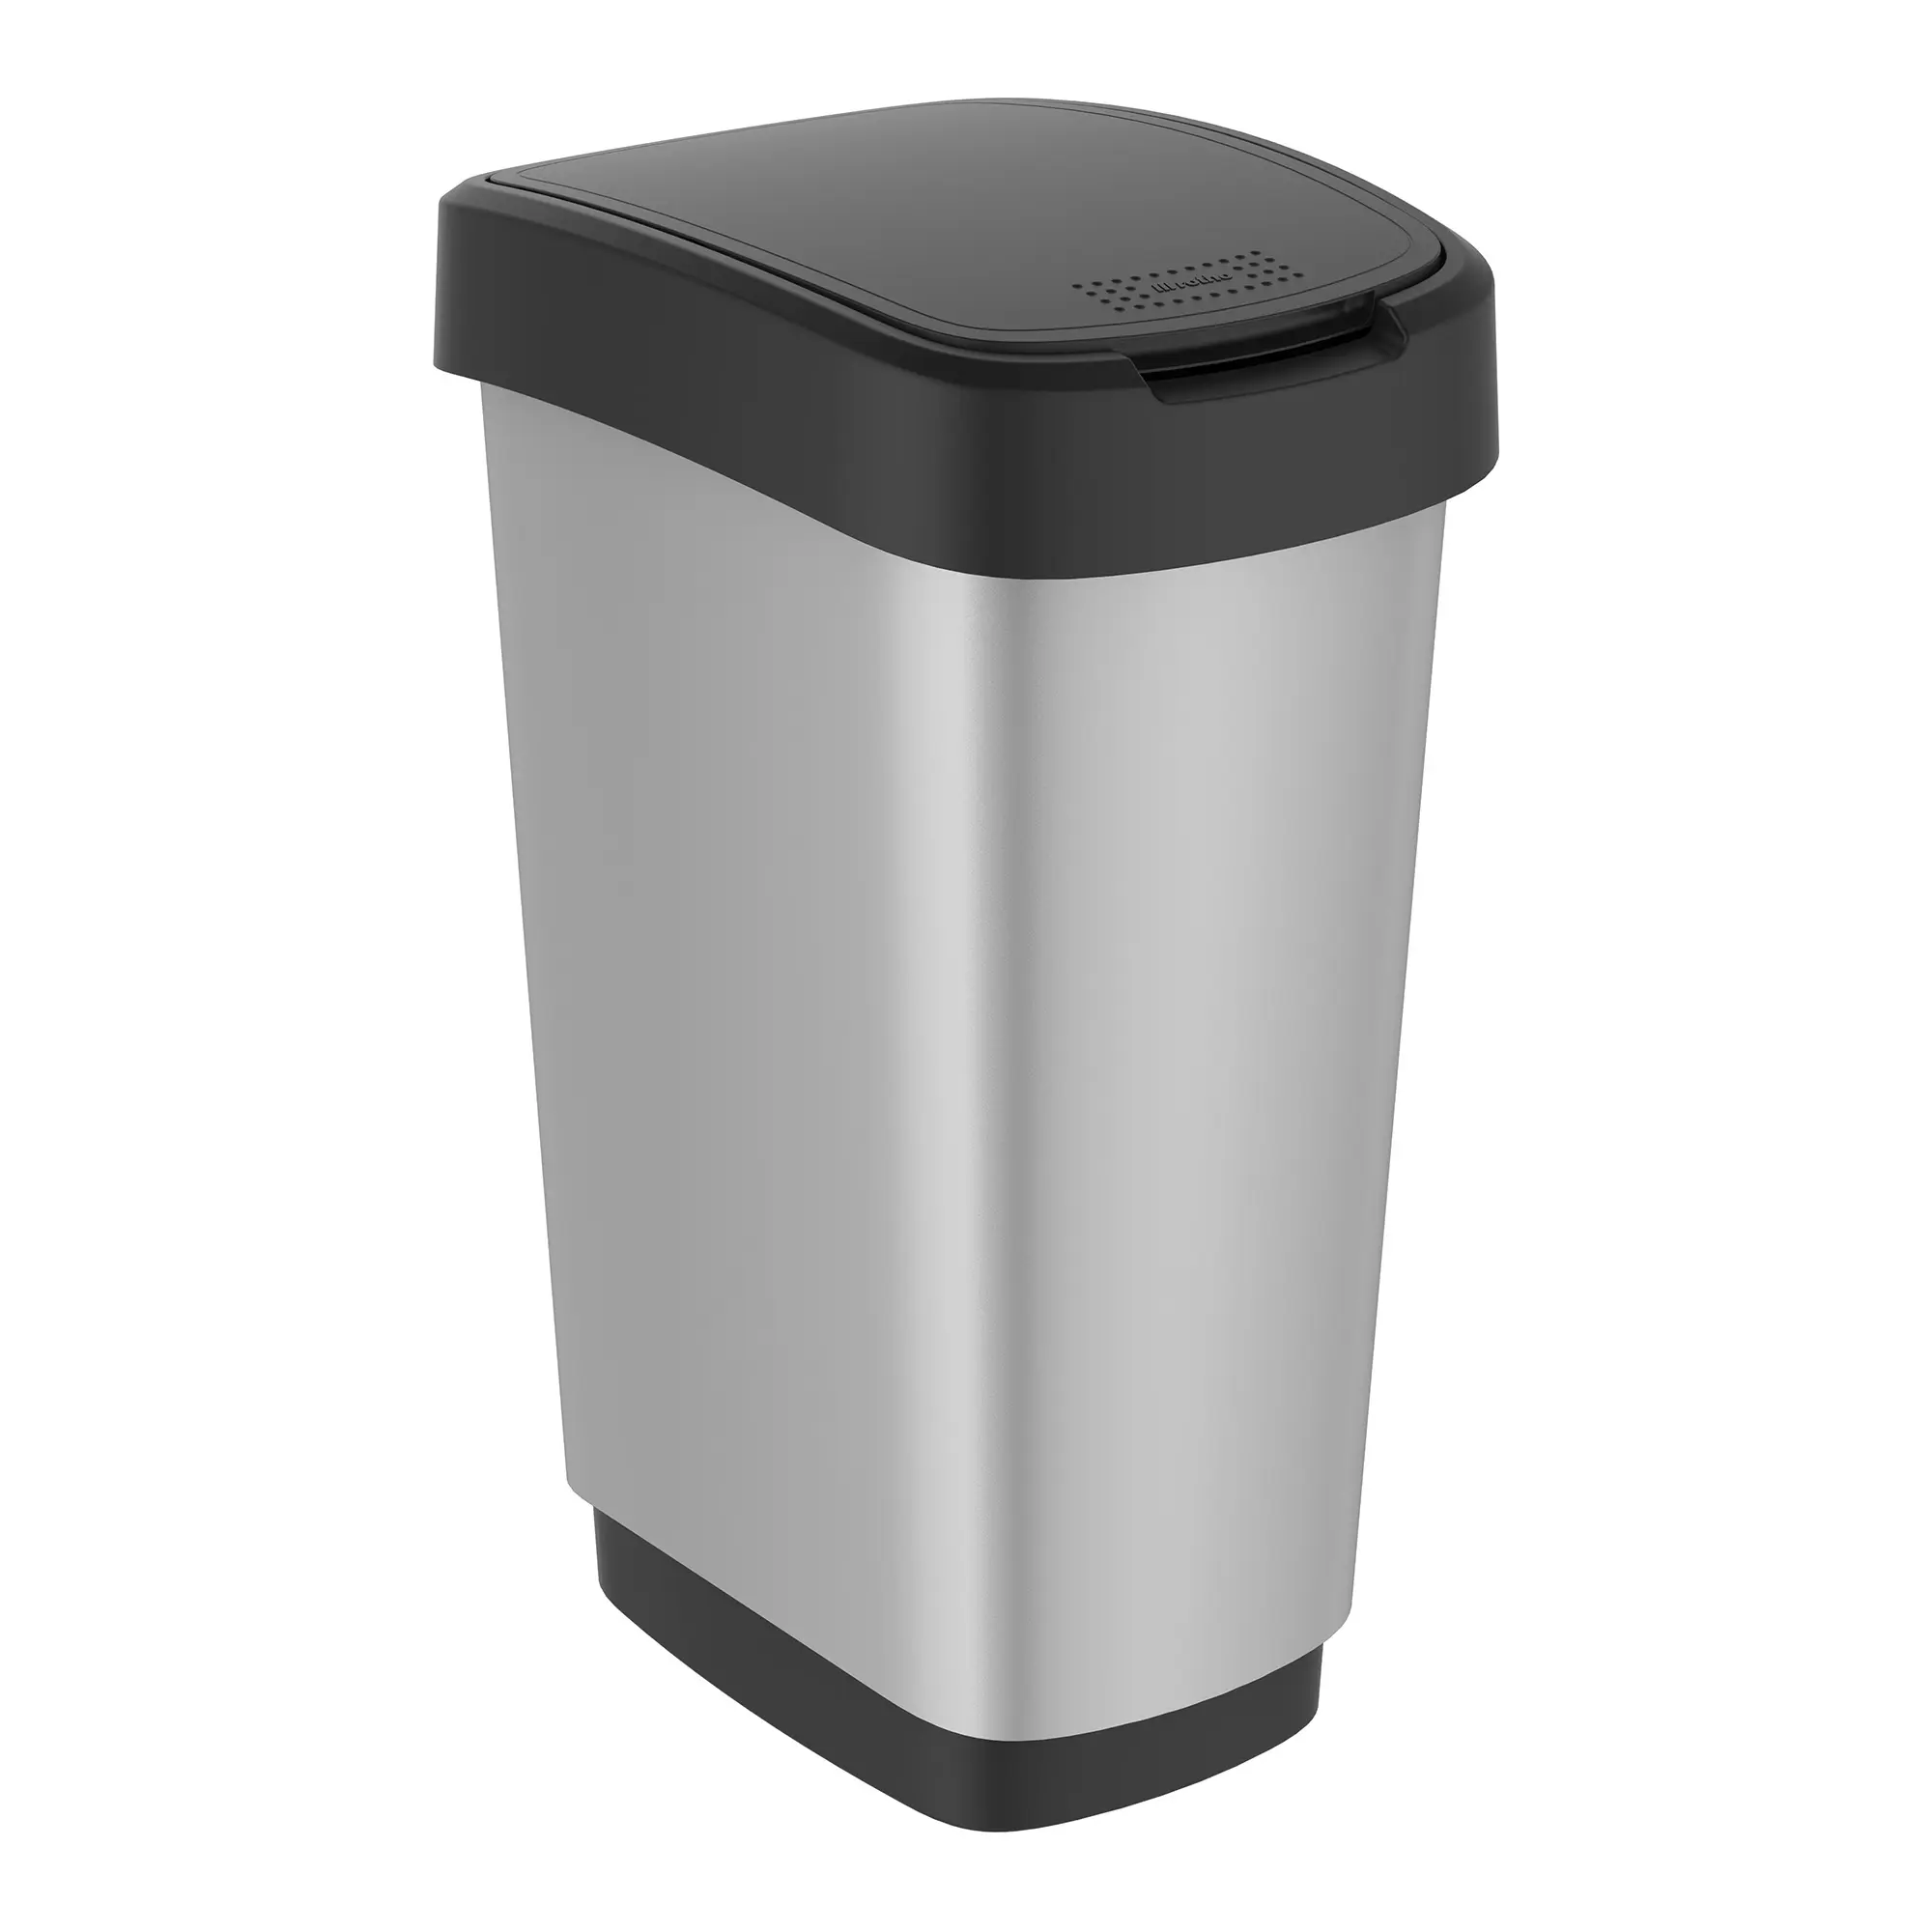 RothoPro Twist Abfallbehälter 50 Liter silber/schwarz 59146489_1